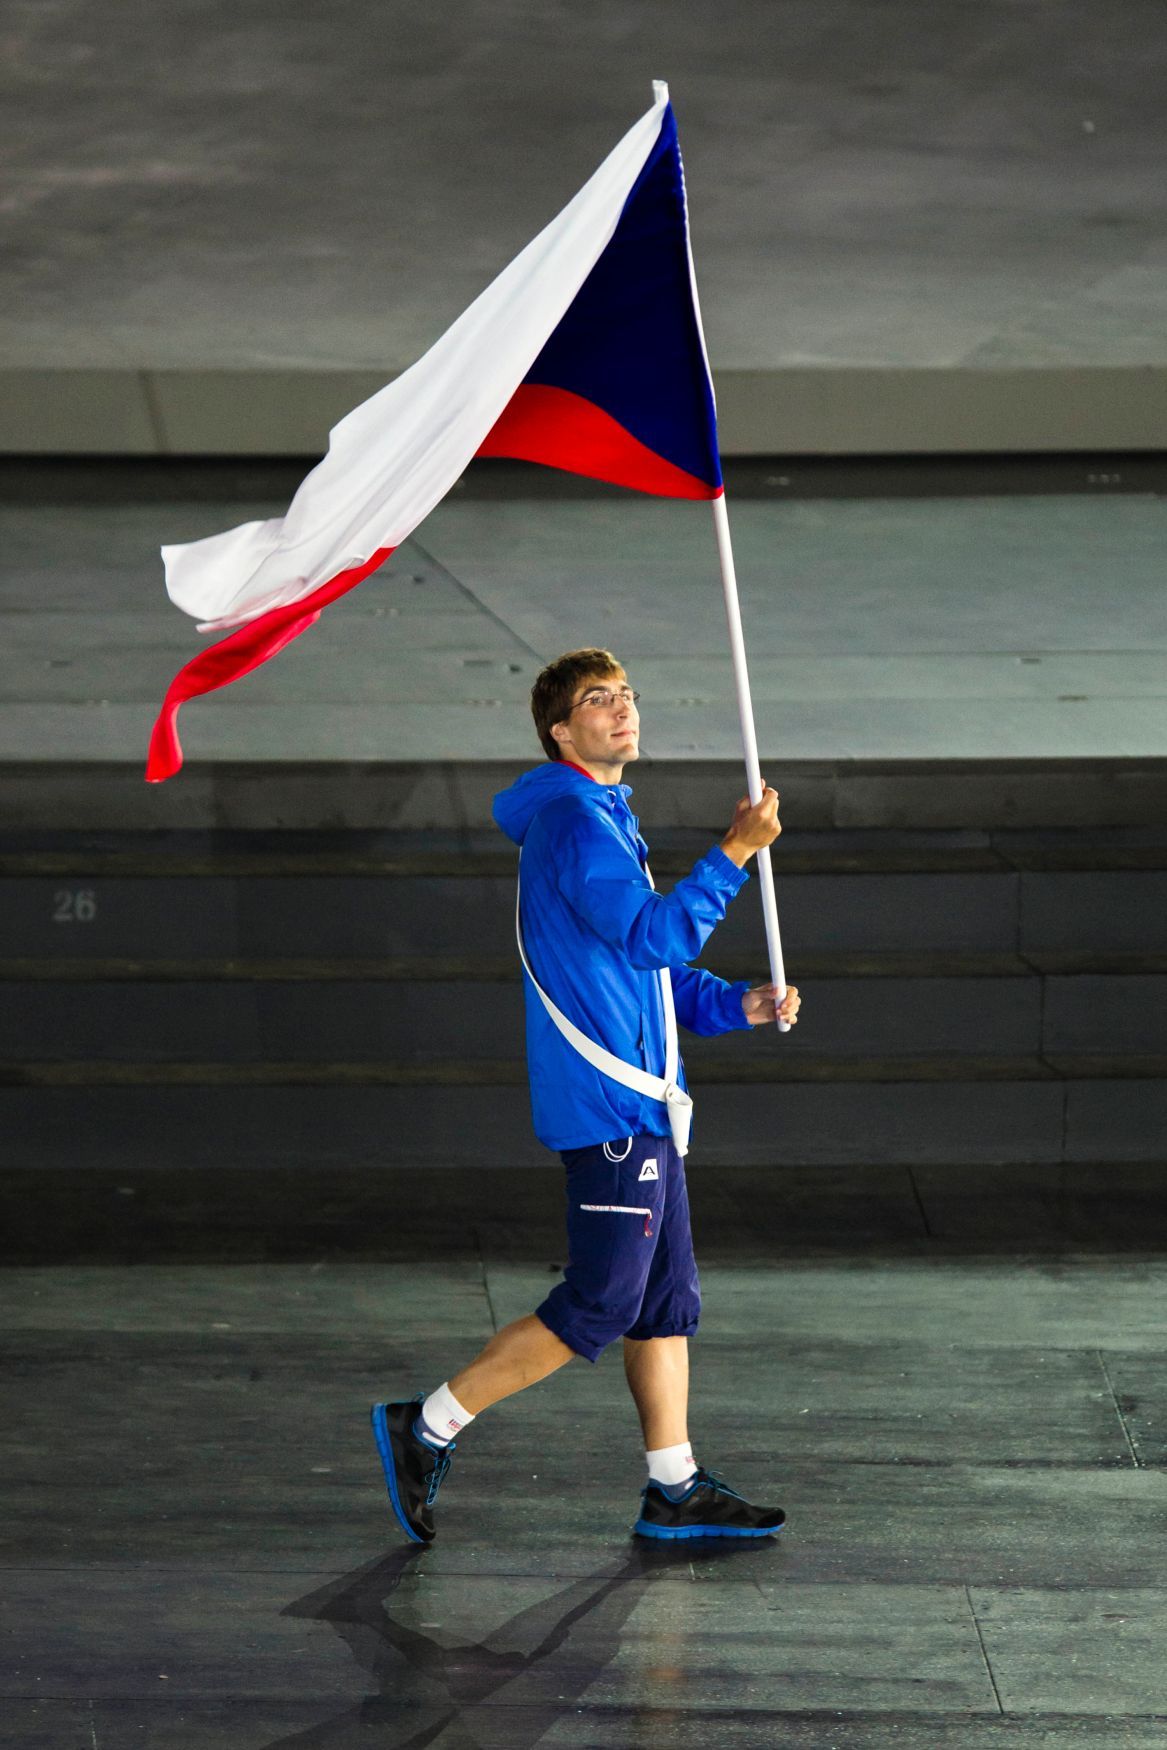 Evropské hry 2015 - slavnostní zahájení: česká výprava (vlajkonoš triatlonista Tomáš Svoboda)